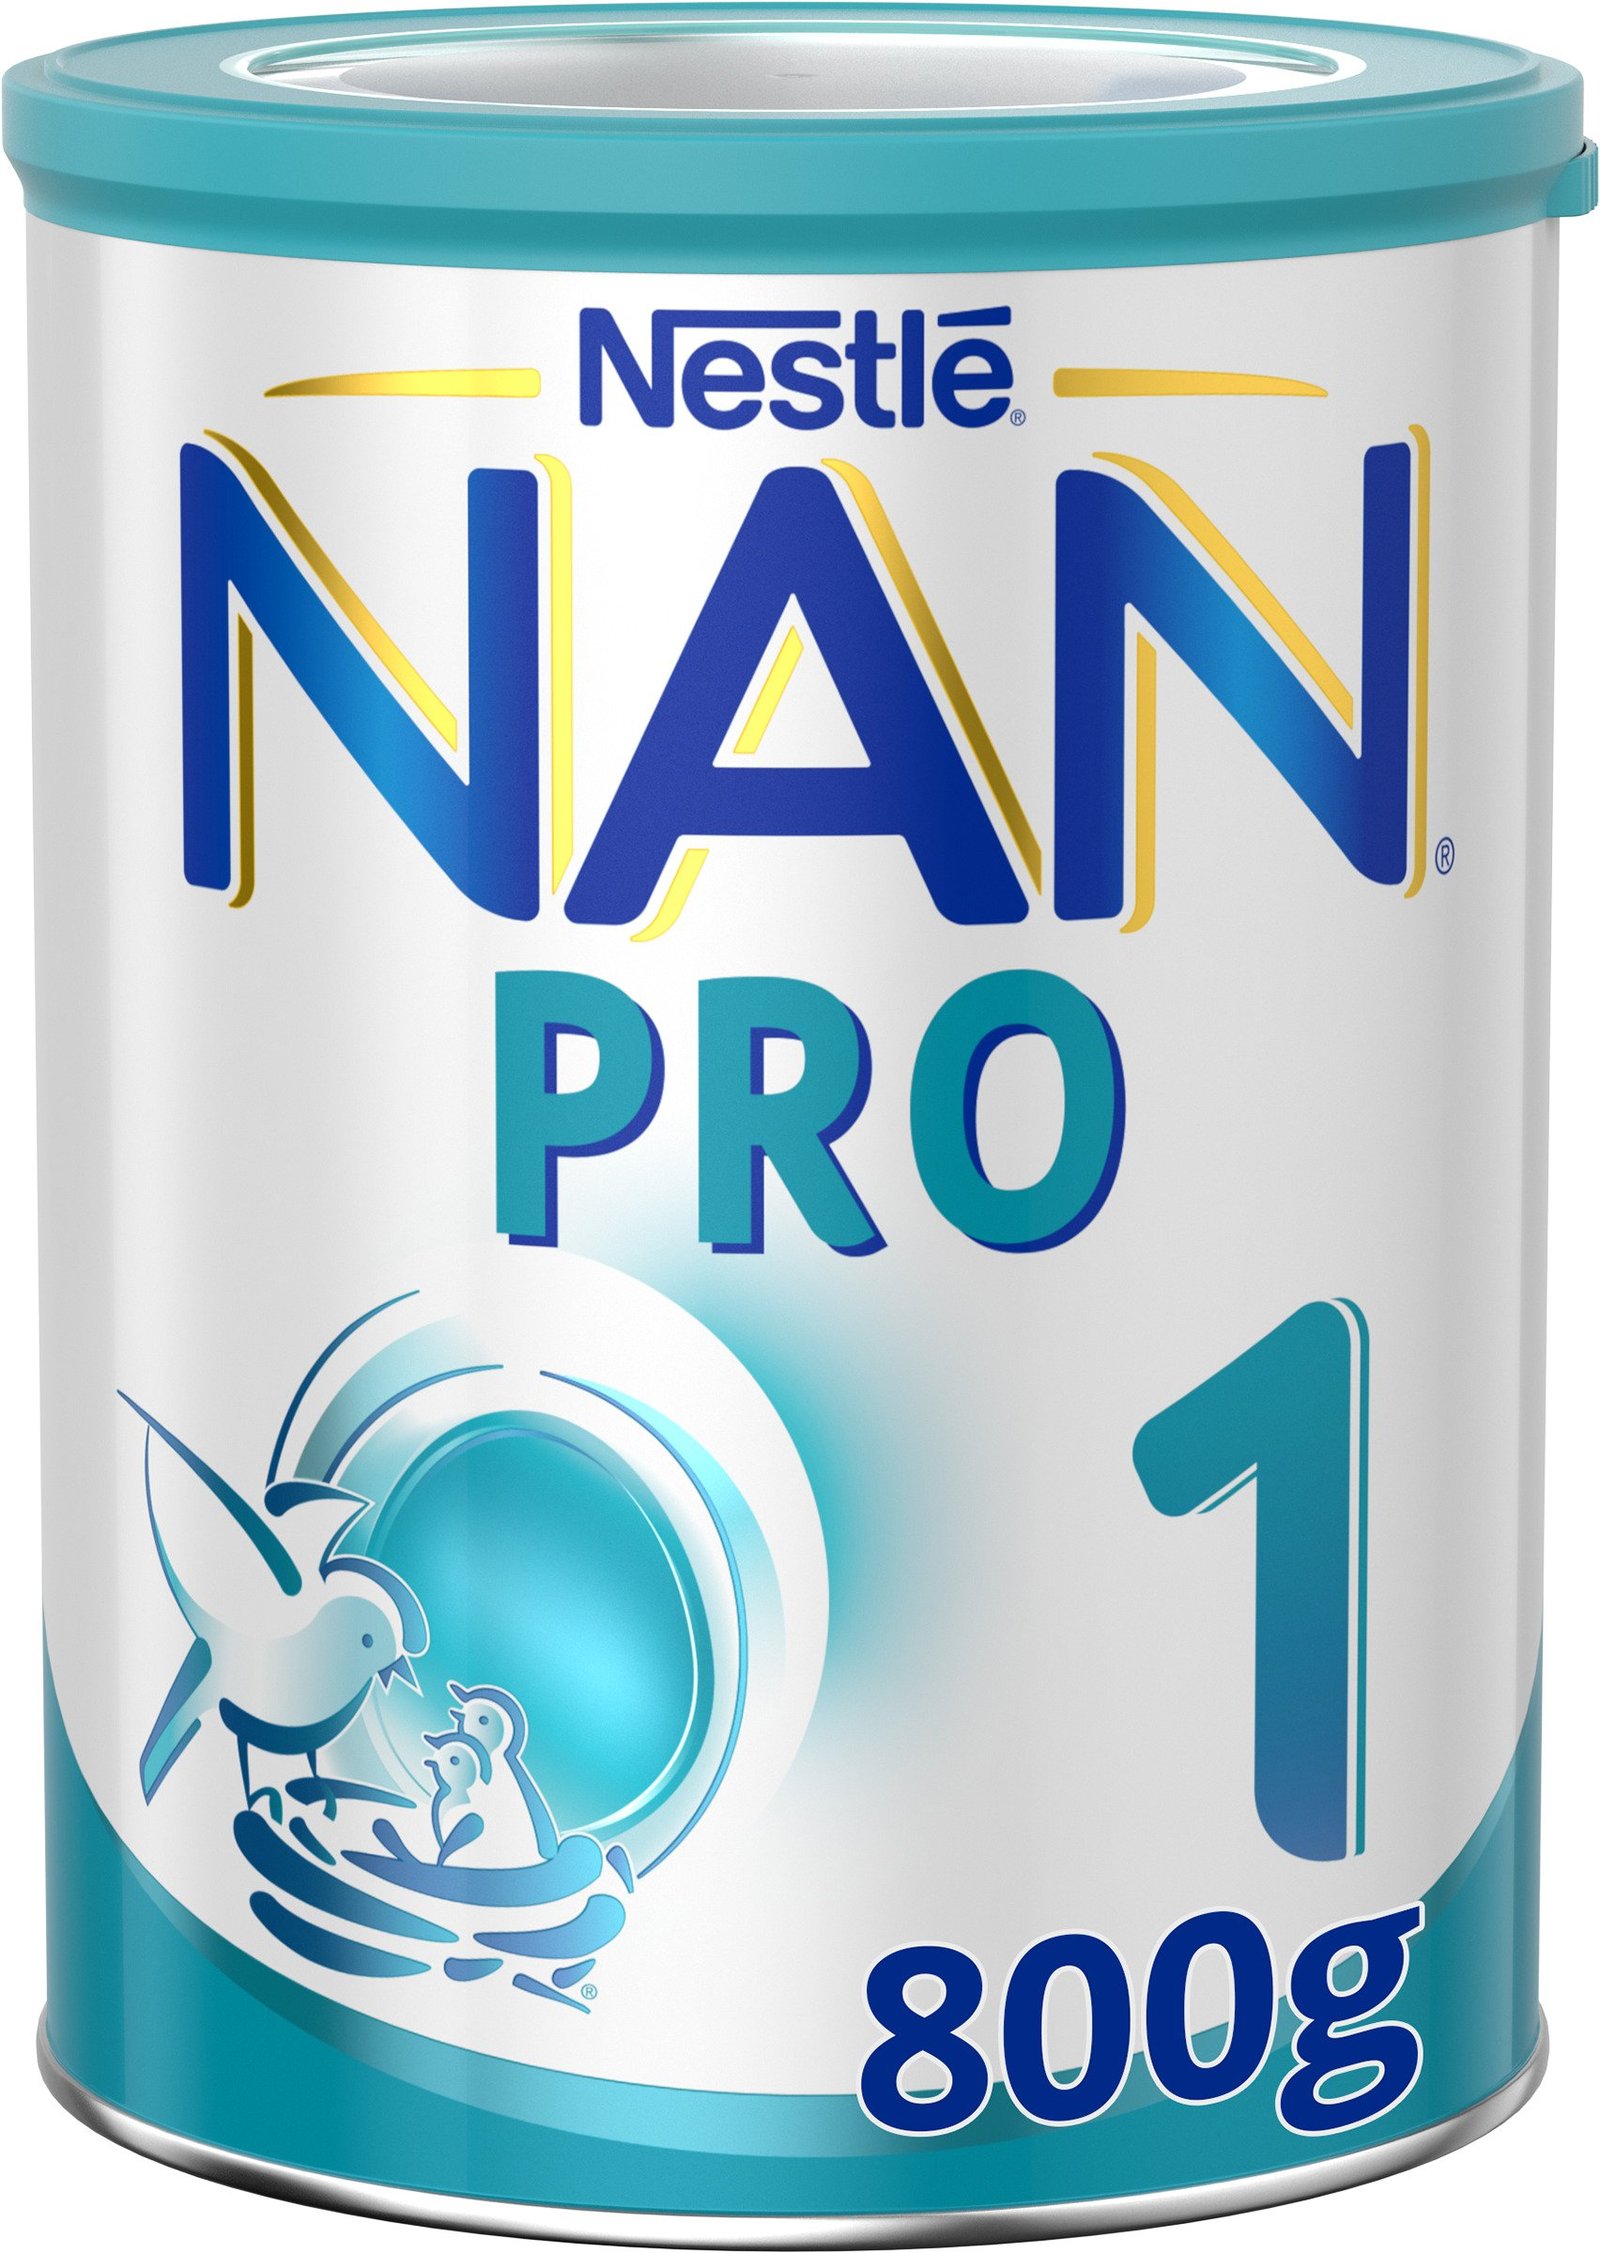 Nestlé NAN PRO 1 - 800 g